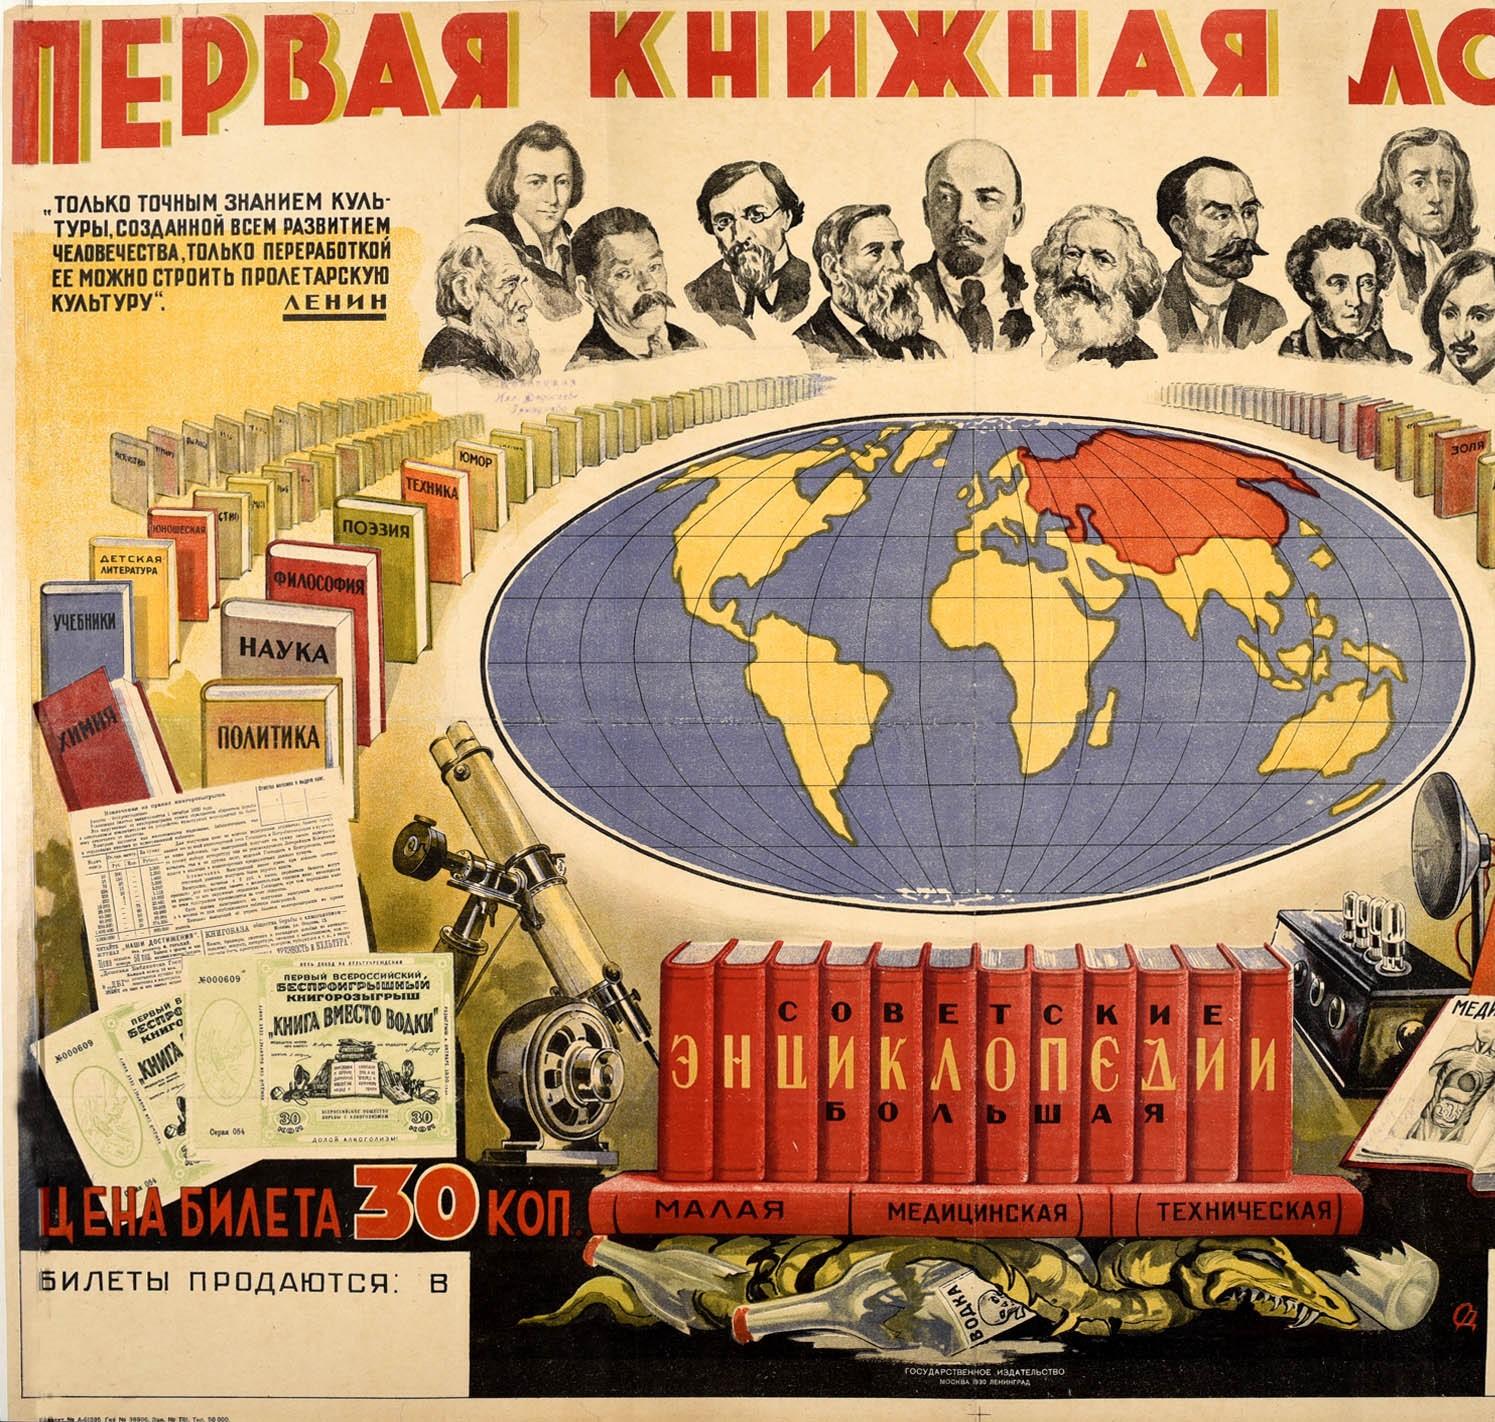 Originales sowjetisches Propagandaplakat, das für die erste Ausgabe einer Buchverlosung wirbt, die vom Staatlichen Verlagshaus GIZ in Zusammenarbeit mit der Gesellschaft zur Bekämpfung des Alkoholismus als Teil einer von der Regierung geführten